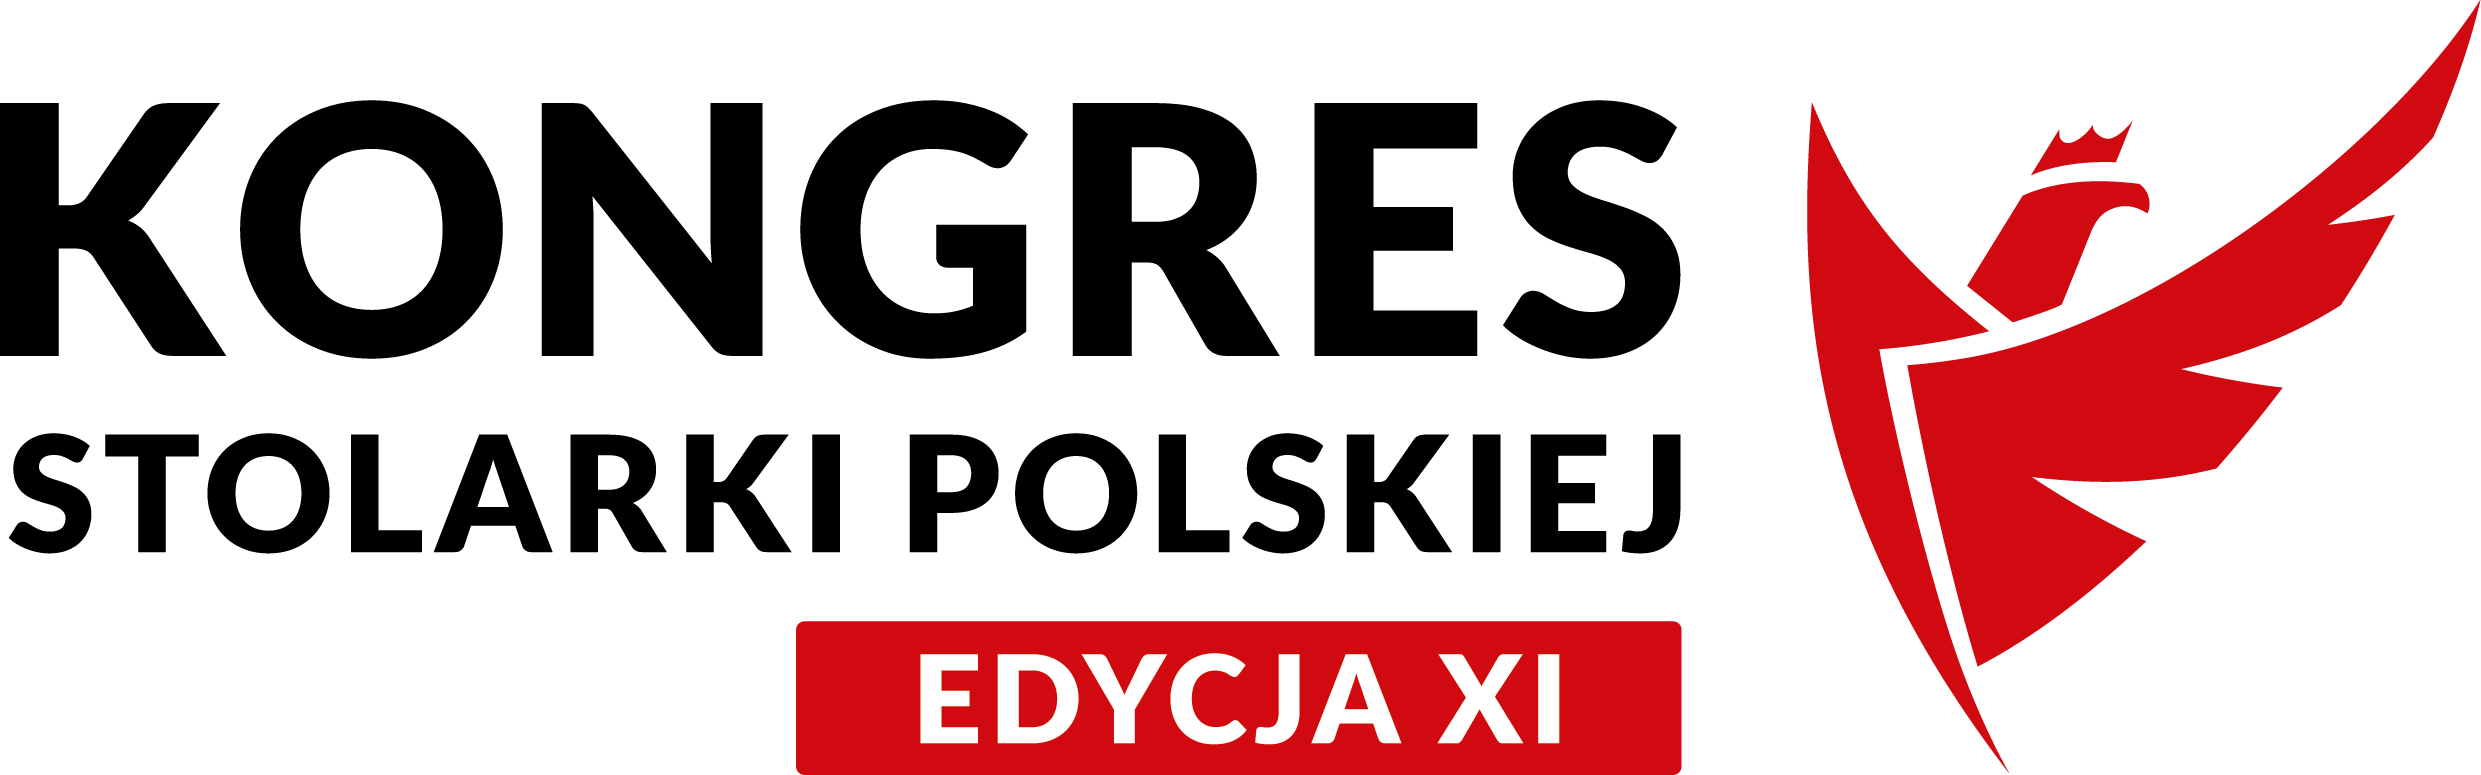 20210522 POiD logo XI Kongres Stolarki Polskiej poziom kolor